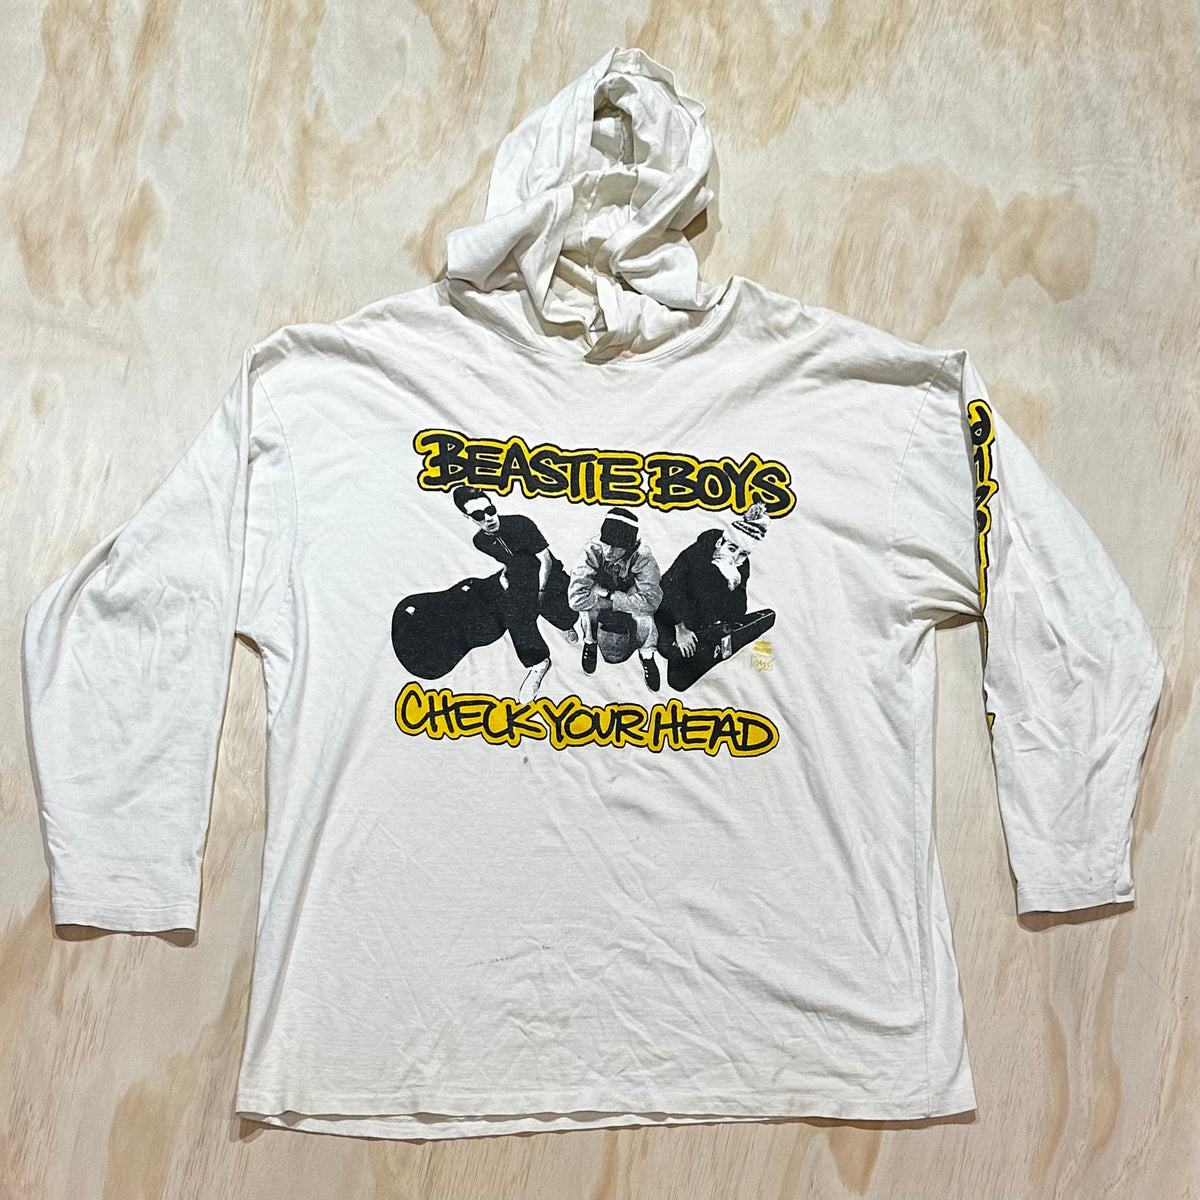 RARE 1993 Beastie Boys Check Your Head Long Sleeve Shirt